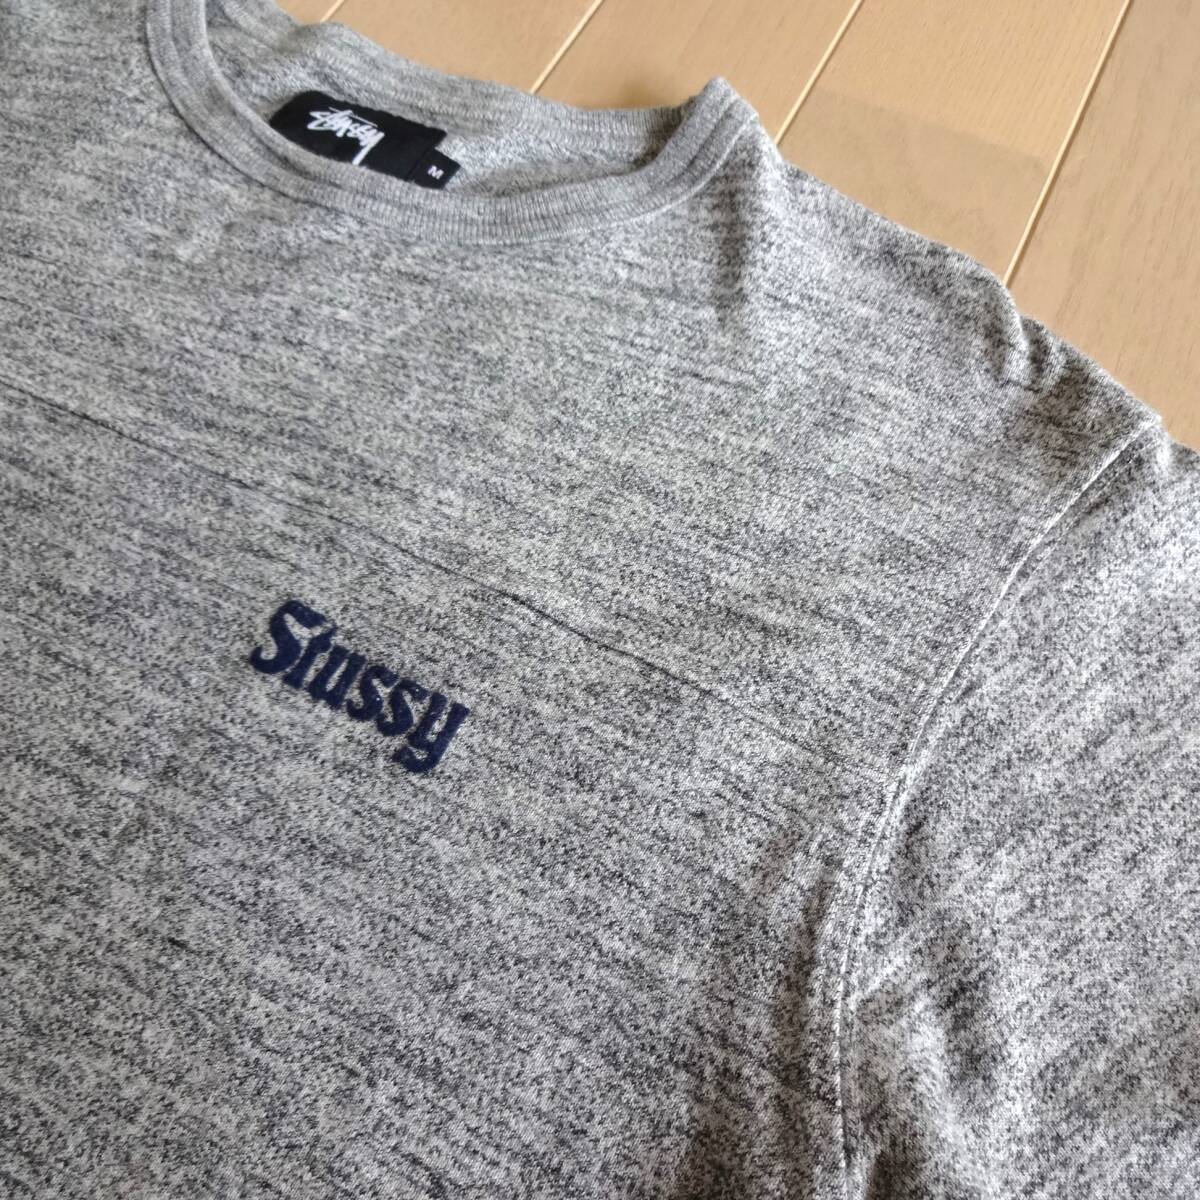  стоимость доставки 520 иен #STUSSY 7 минут длина футболка ... серый M# Stussy серый хоккей рубашка Rugger рубашка # футболка с длинным рукавом рубашка с длинным рукавом long T одноцветный 